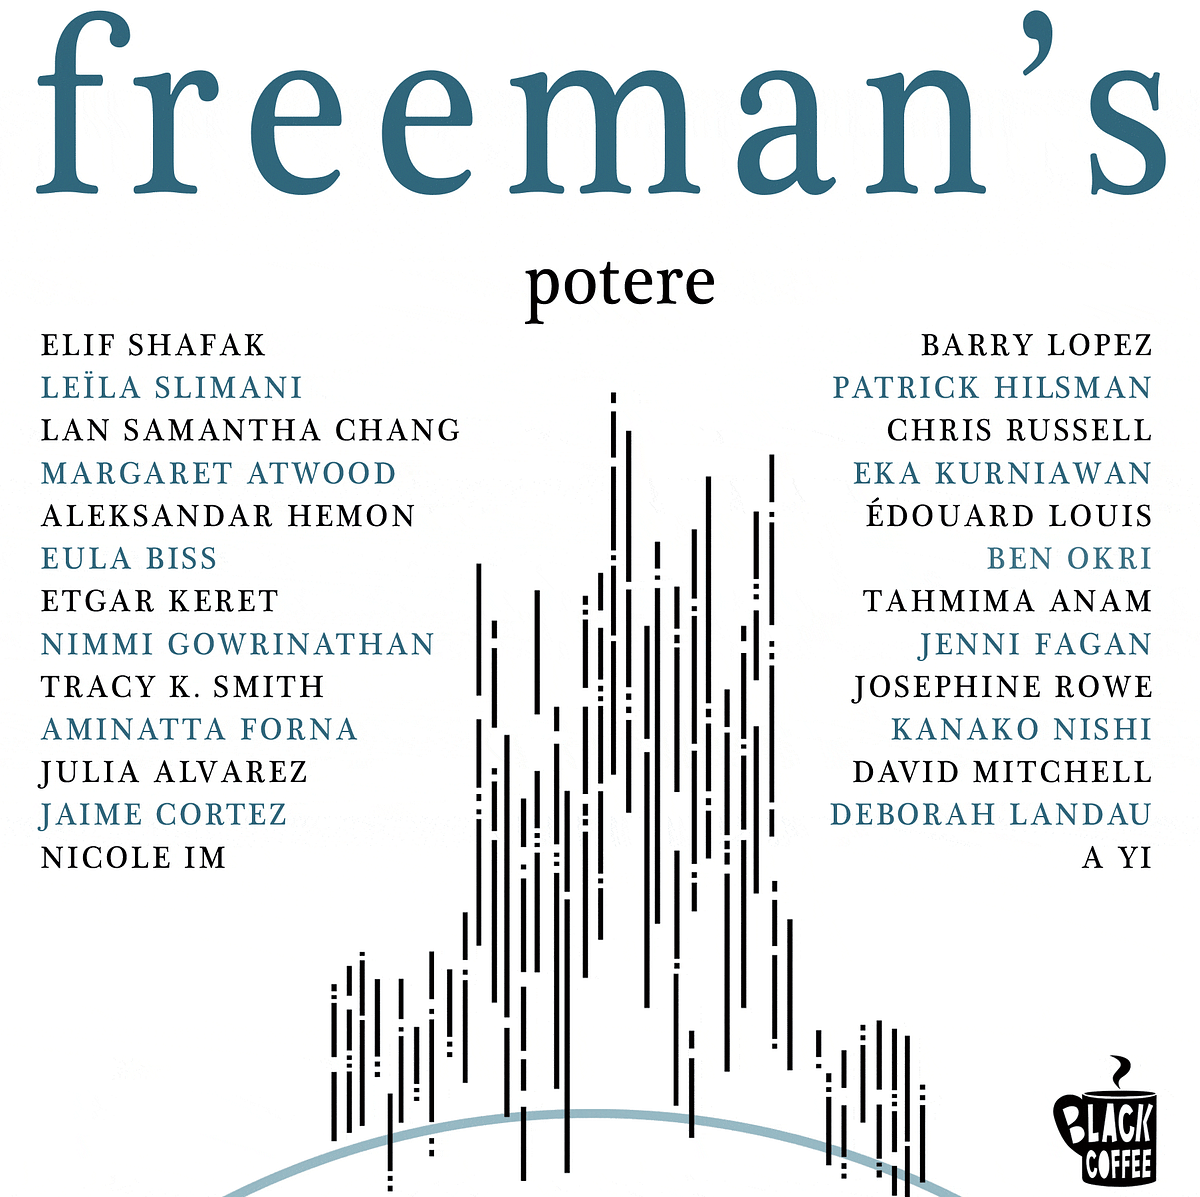 Freeman’s, potere: una rivista letteraria